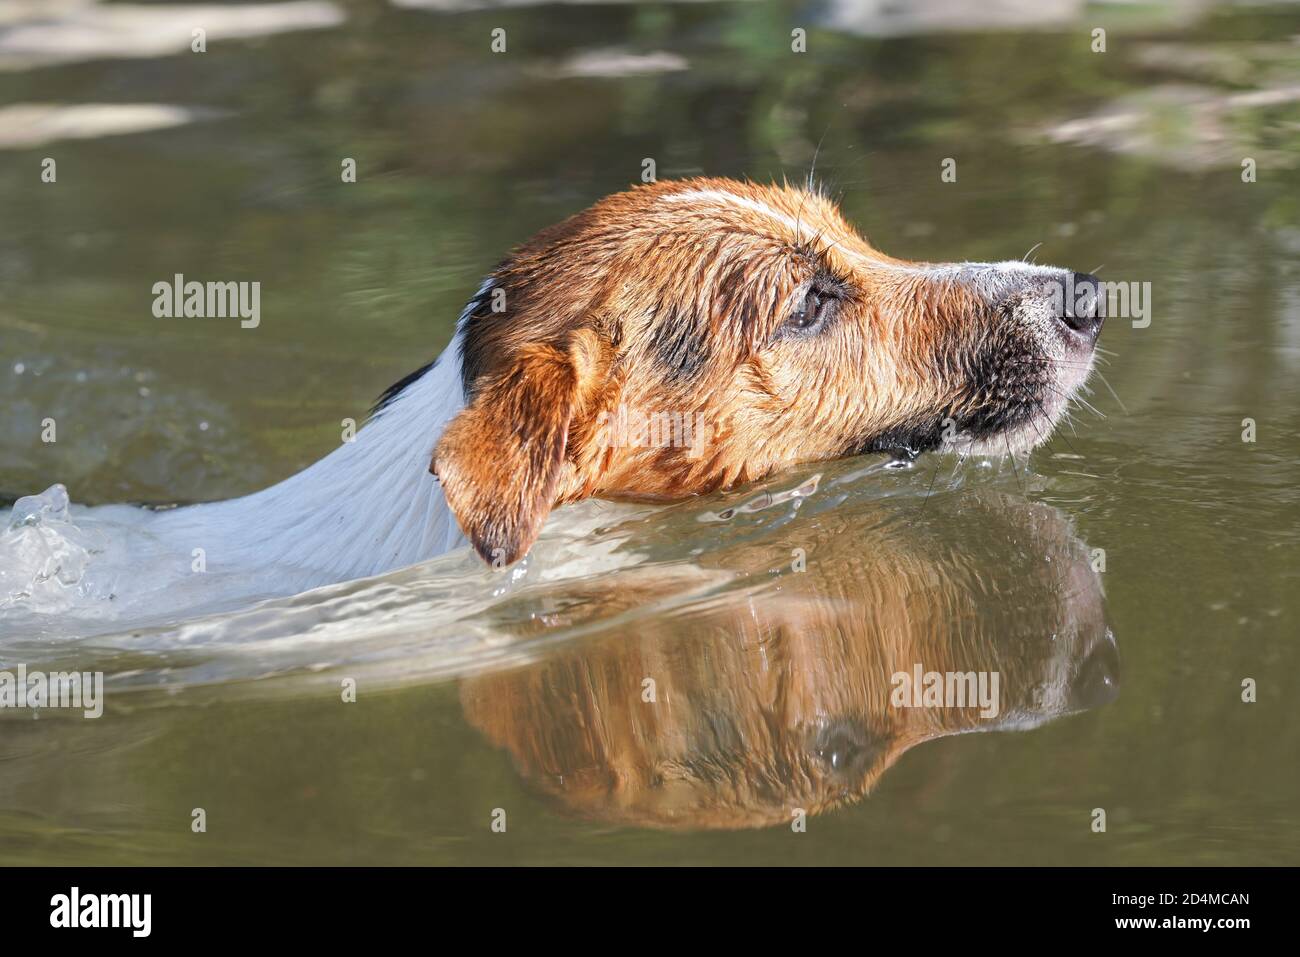 Il sole splende sul piccolo cane Jack Russell che nuota nel fiume, solo la testa sopra l'acqua Foto Stock